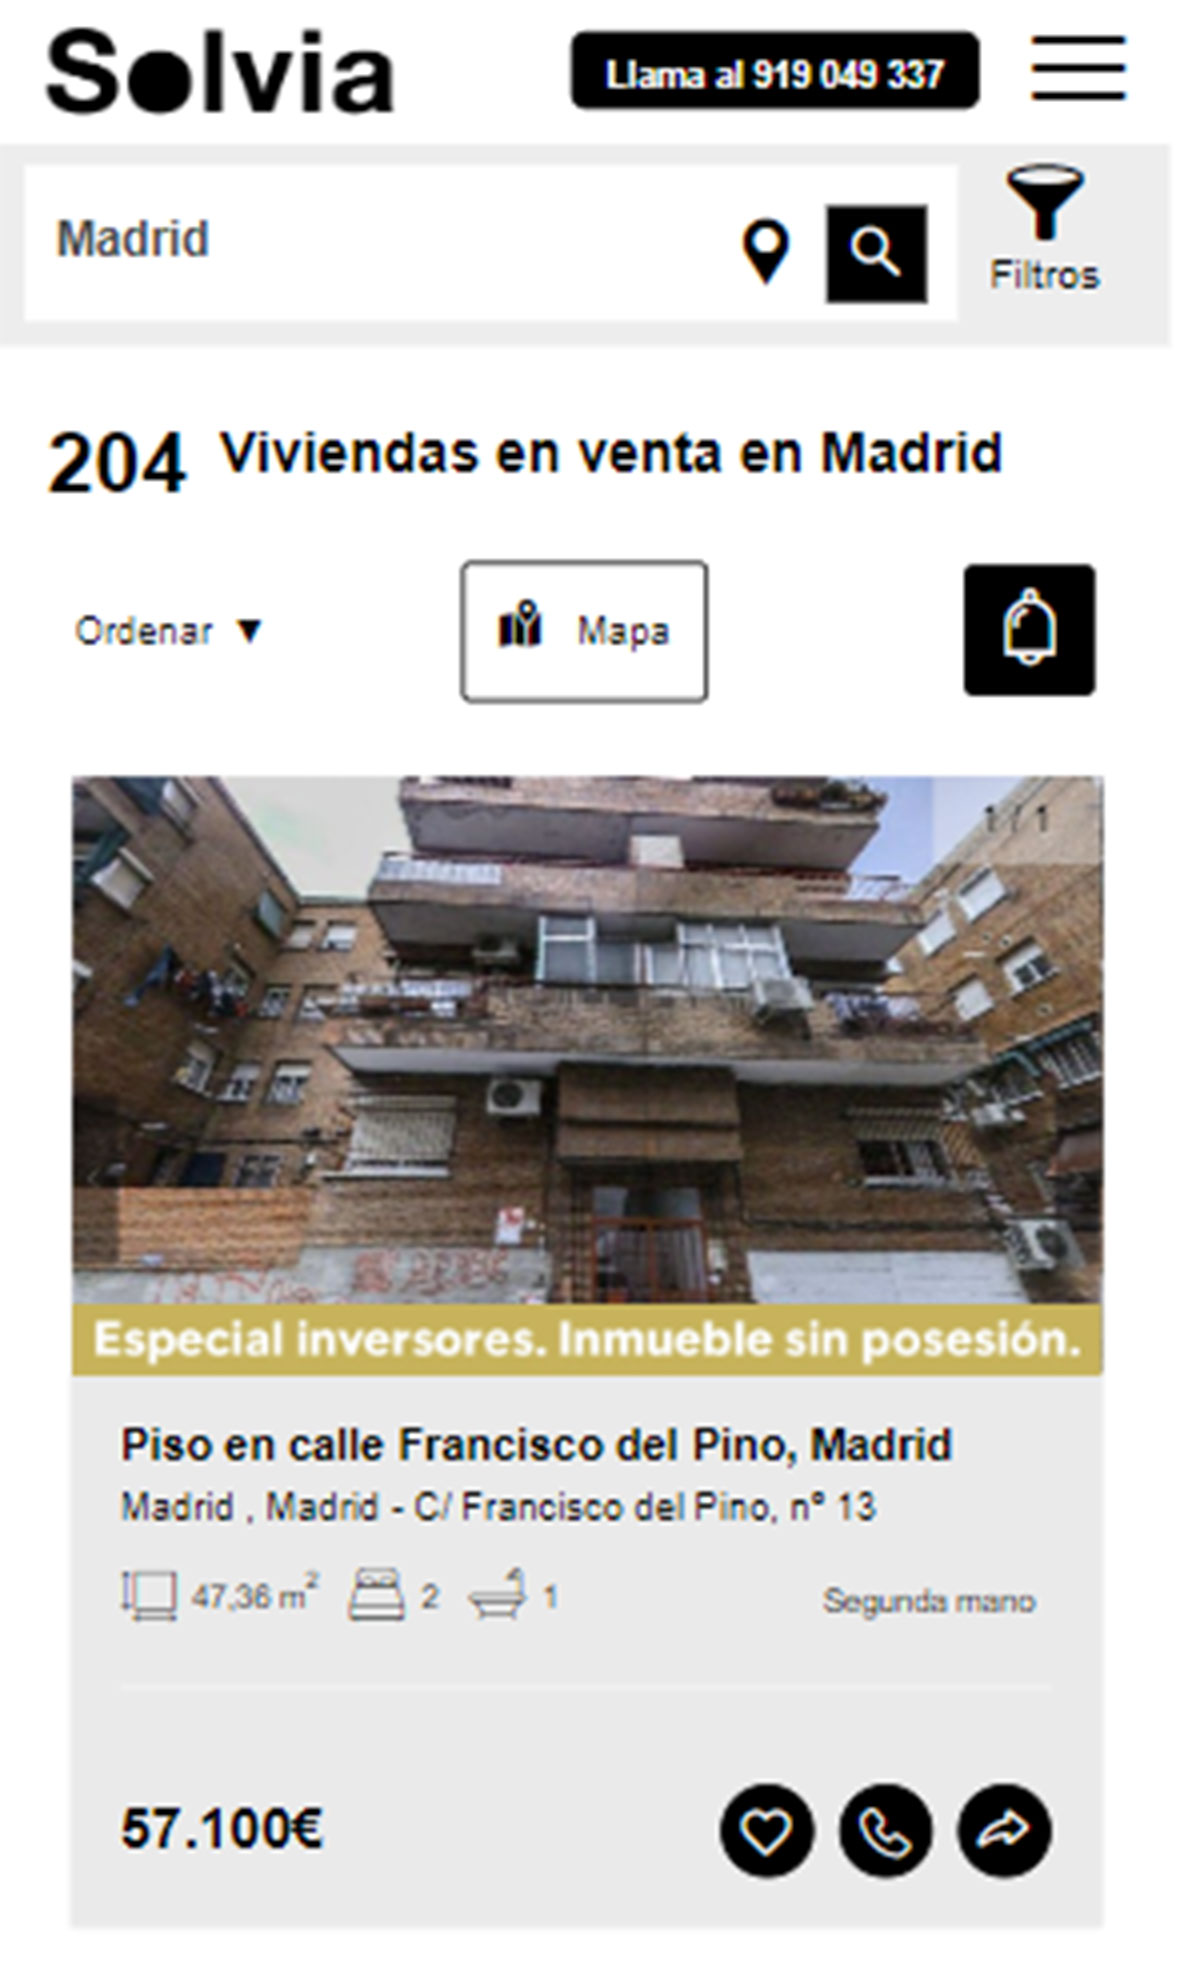 Piso en la ciudad de Madrid por 57.100 euros